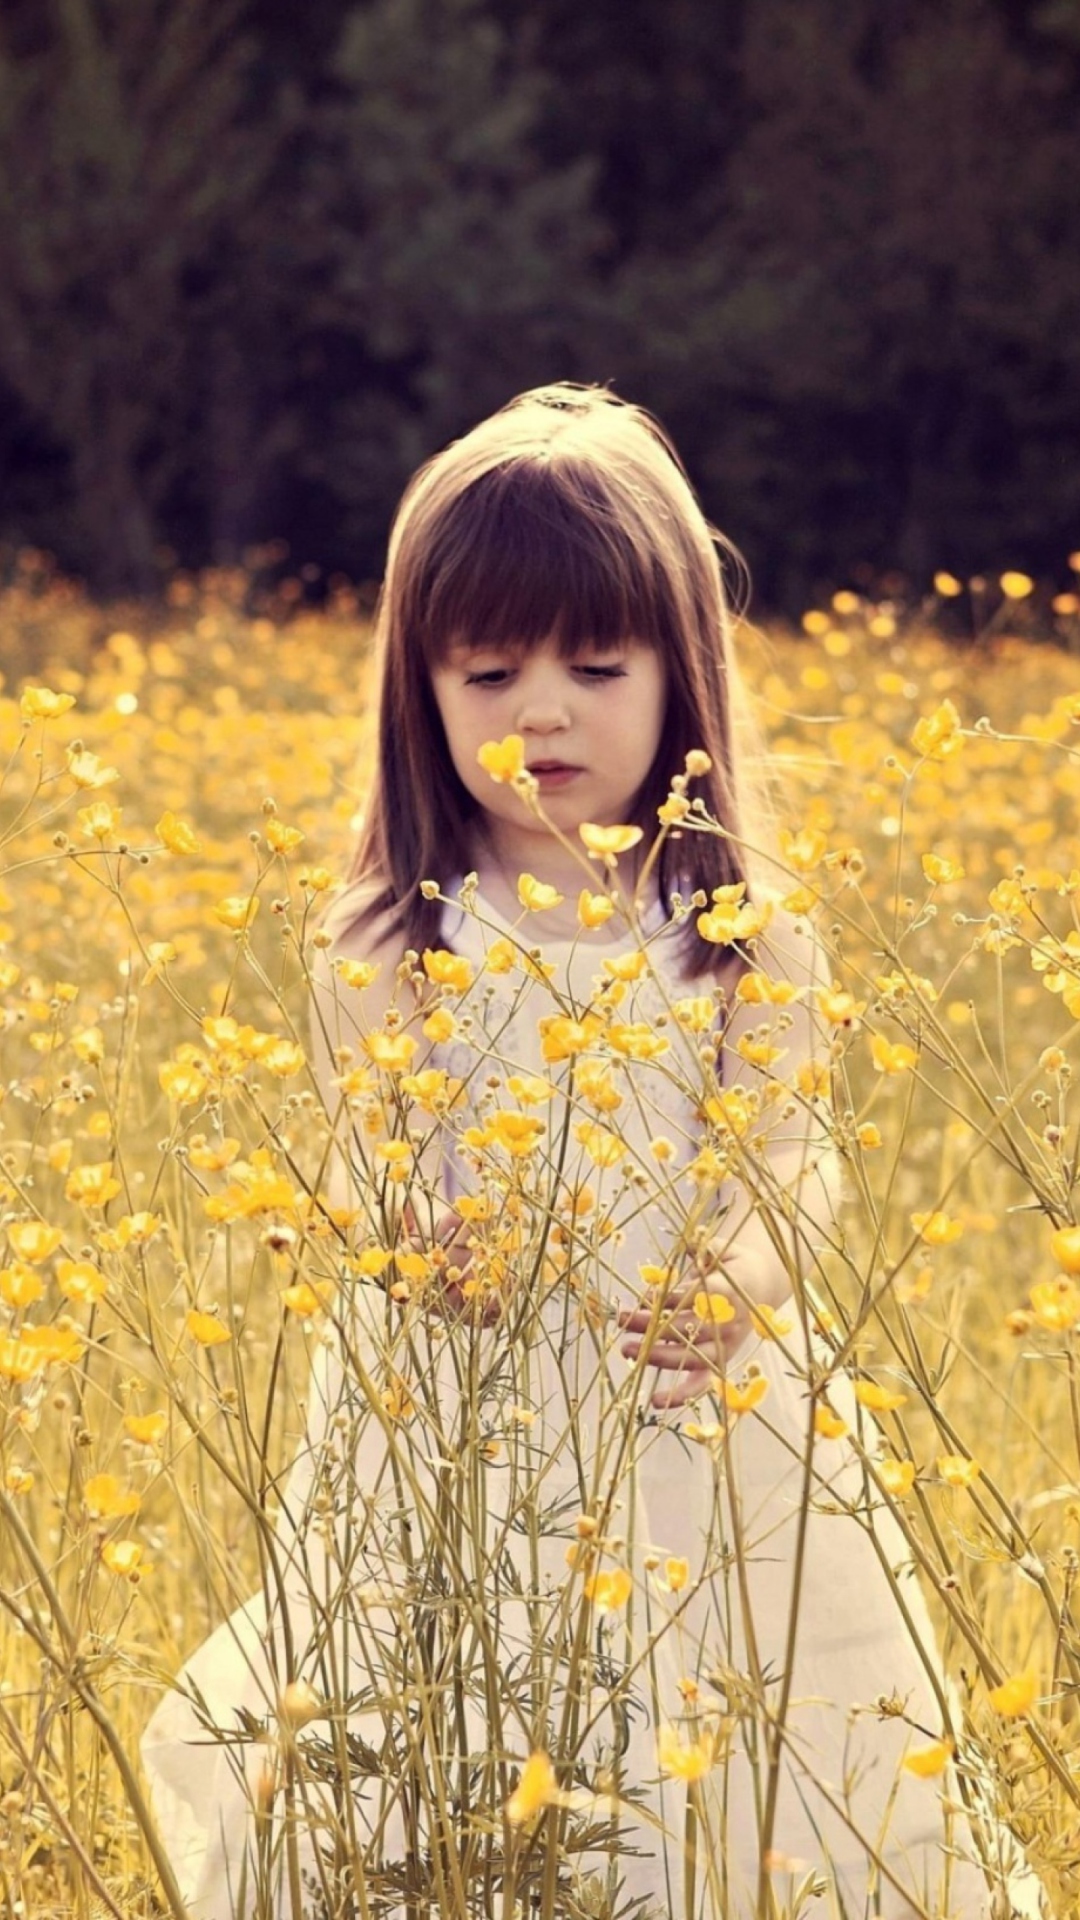 Cute Little Girl In Flower Field wallpaper 1080x1920